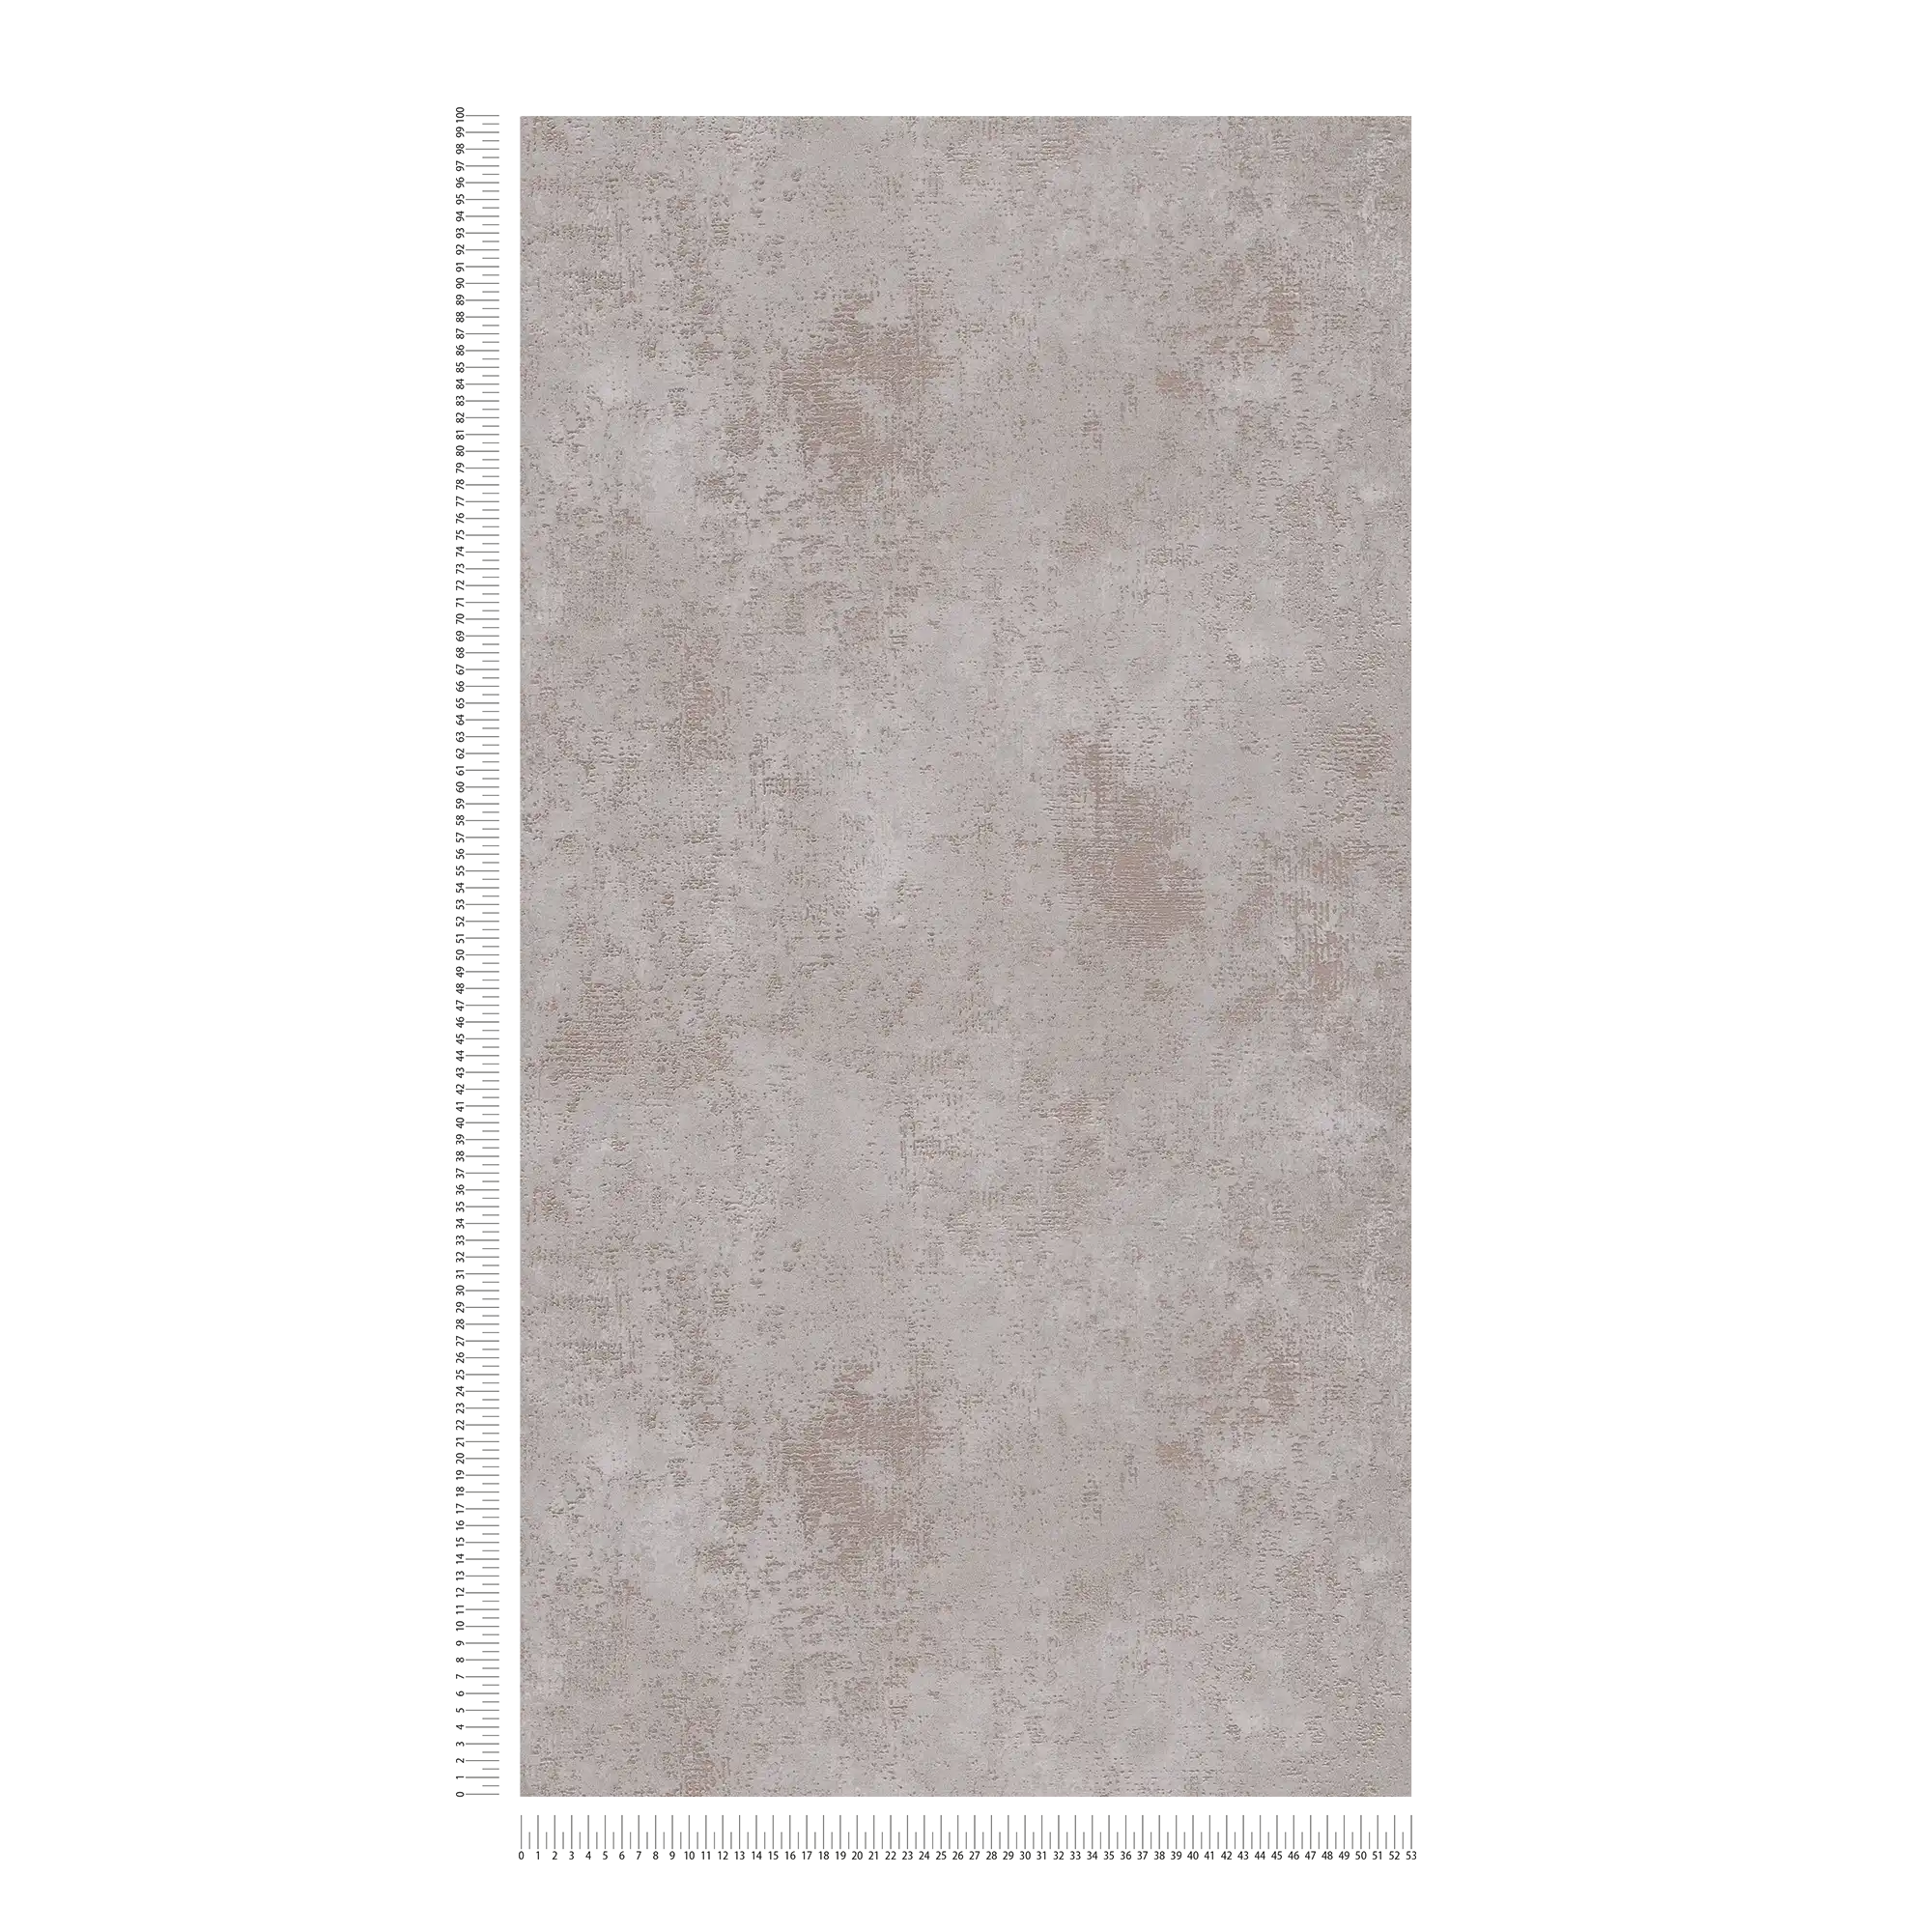             Papel pintado no tejido gris con efecto de textura metálica
        